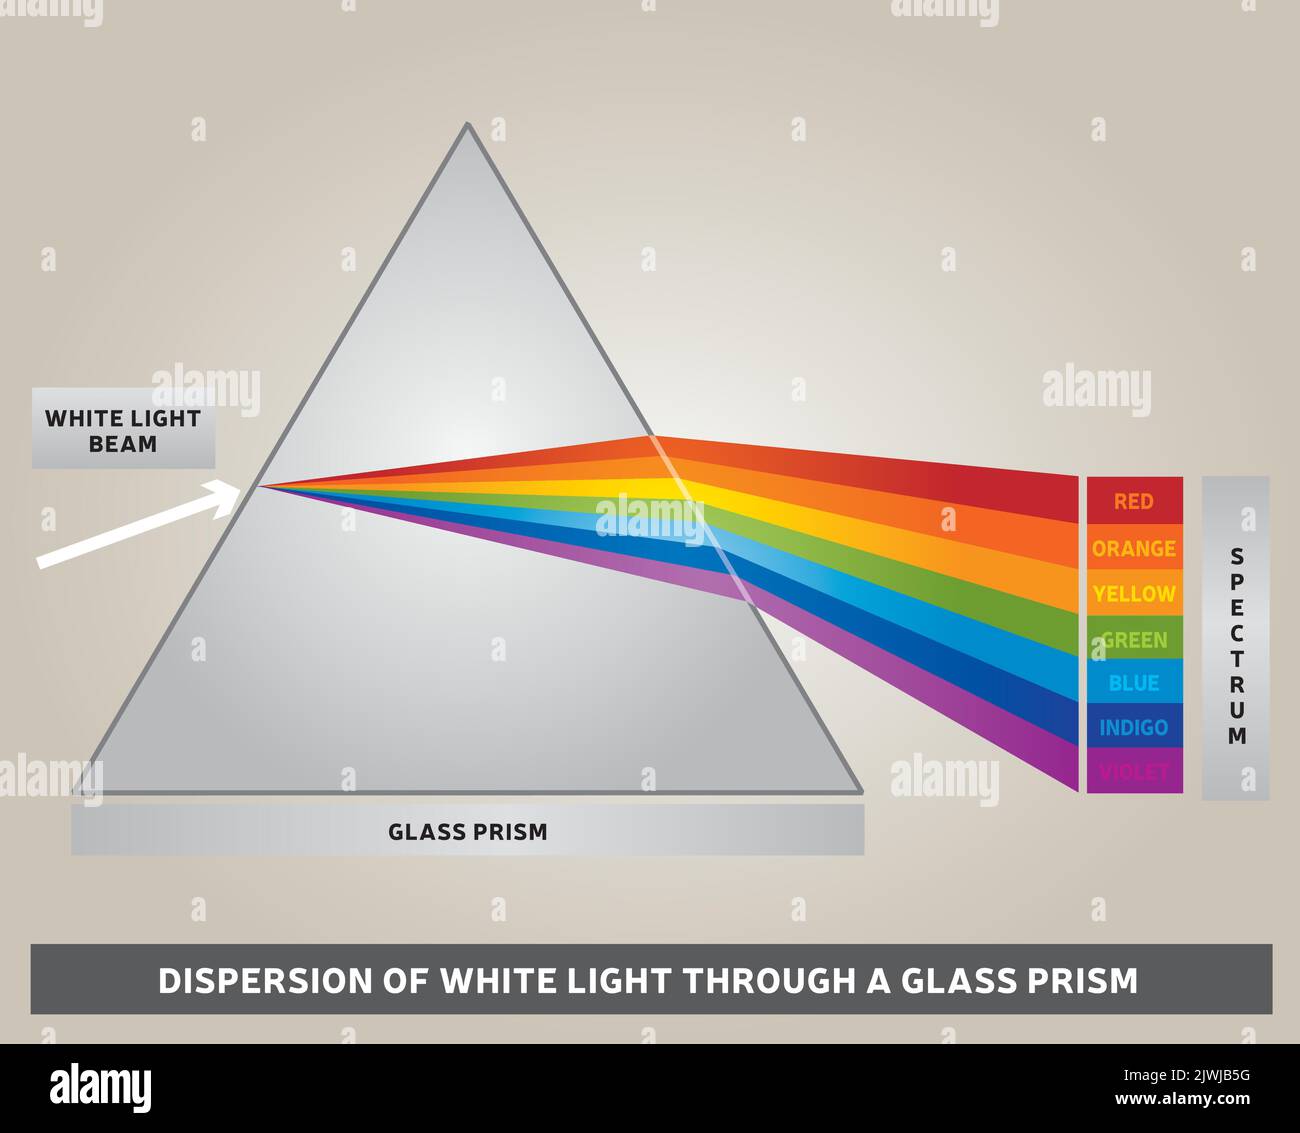 Verbreitung von weißem Licht durch ein GlasPrisma - Diagramm - Vektor - Regenbogenfarben - Lichtstrahlen Stock Vektor